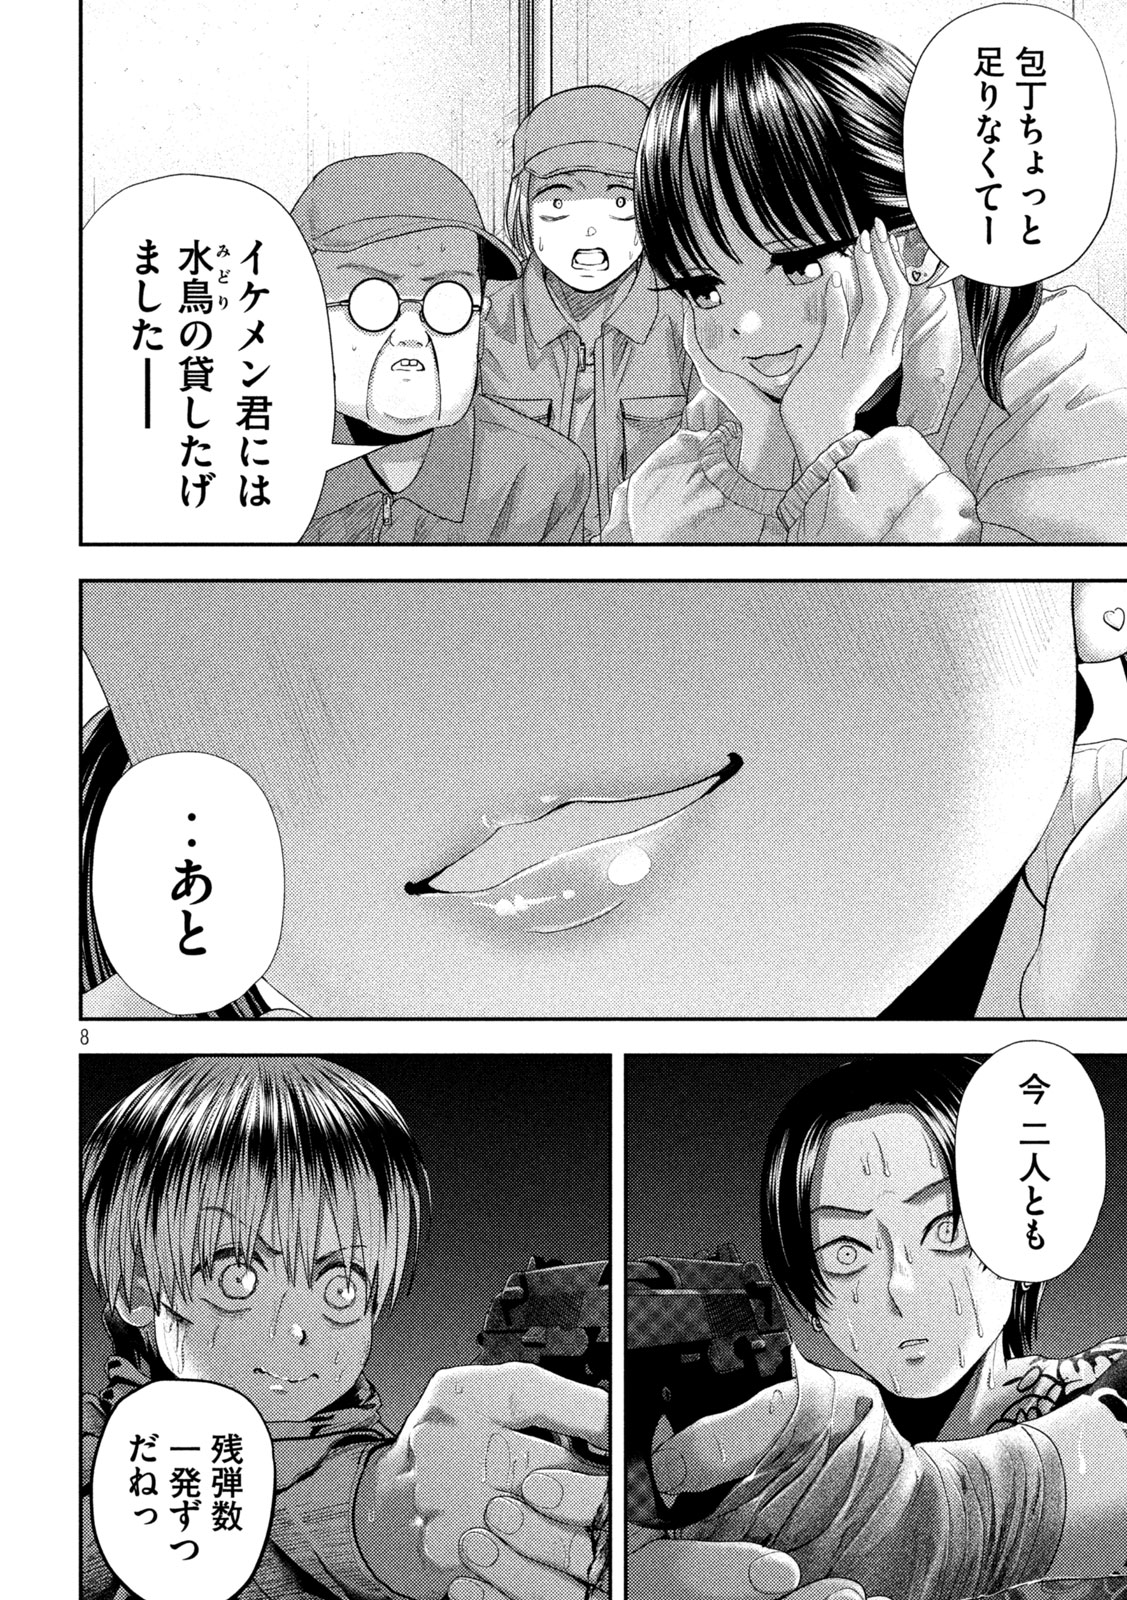 Nezumi no Koi - Chapter 33 - Page 8